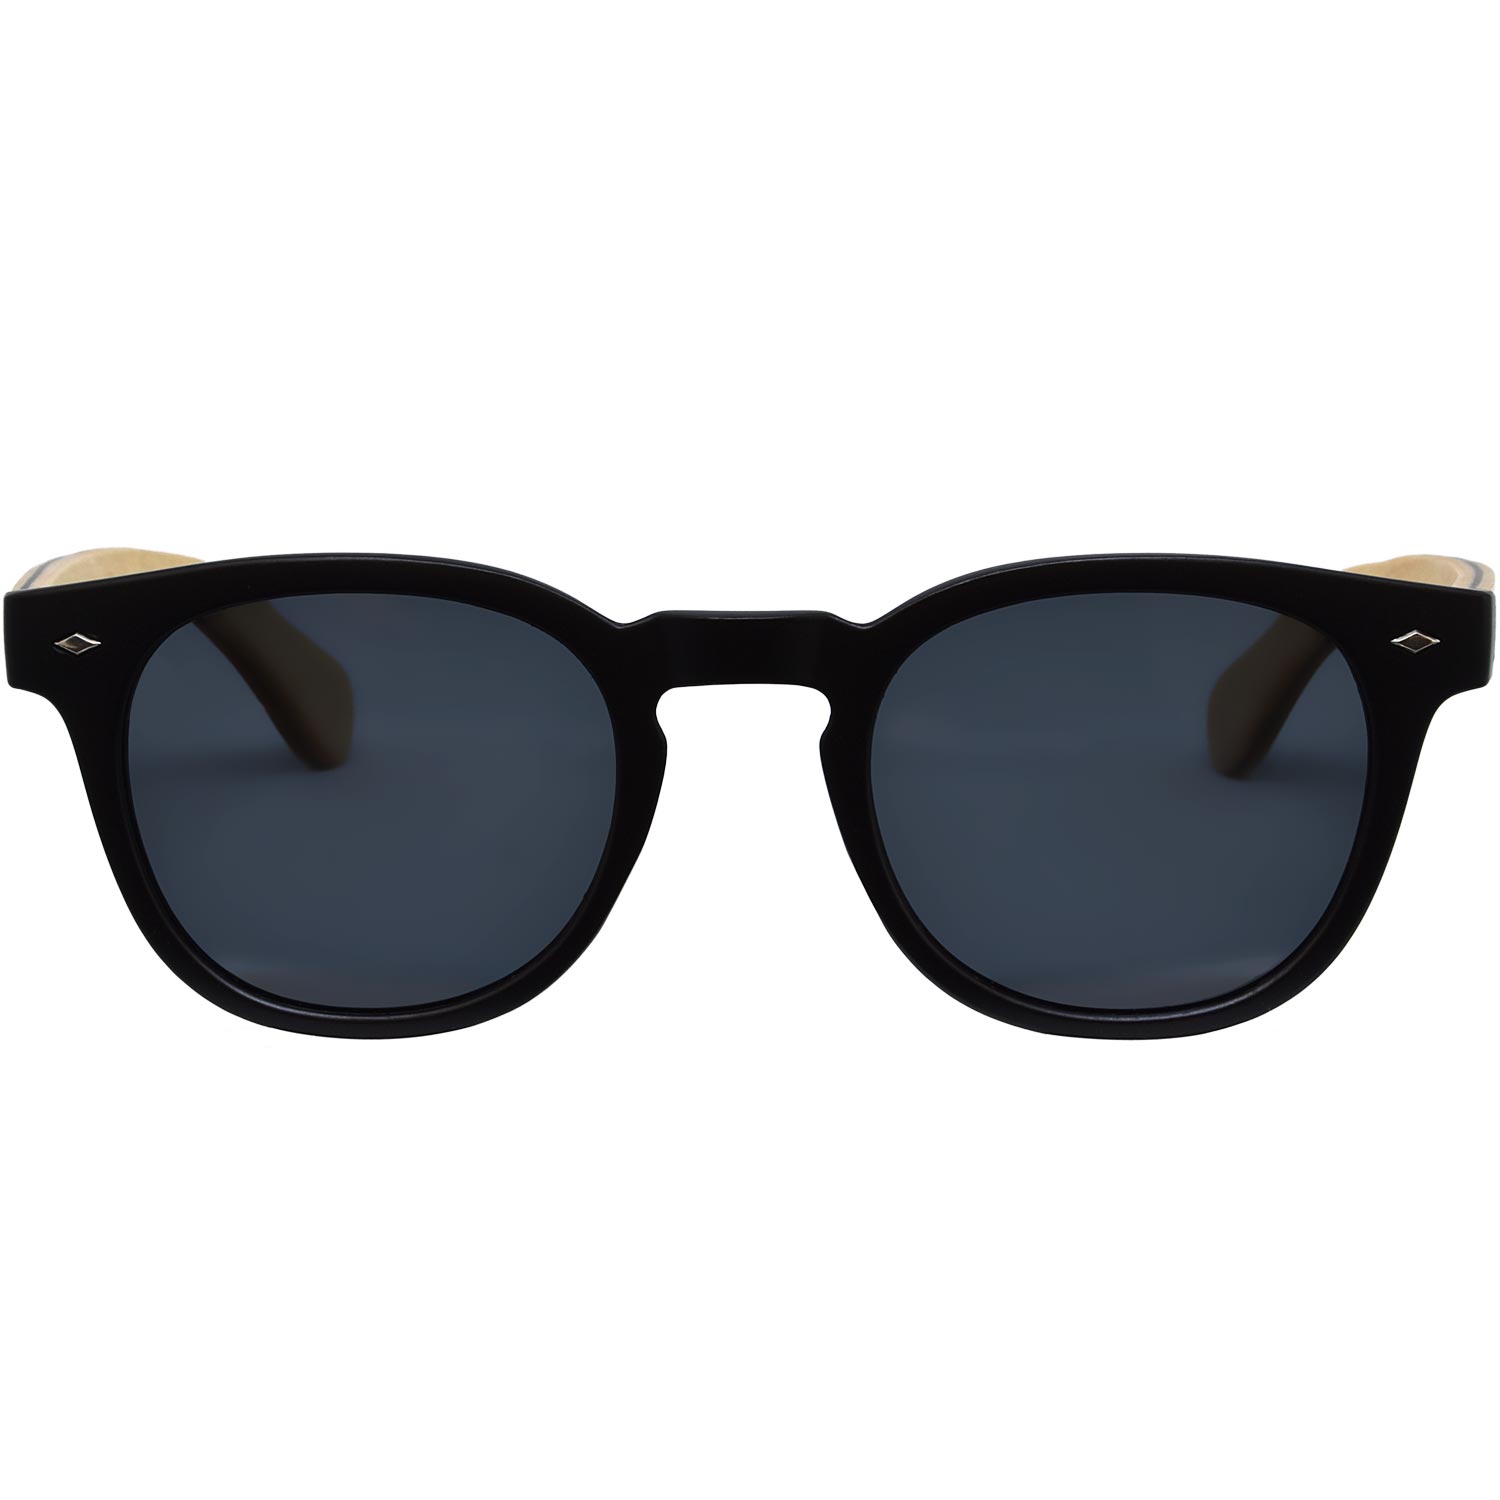 Round maple wood sunglasses black polarized lenses front